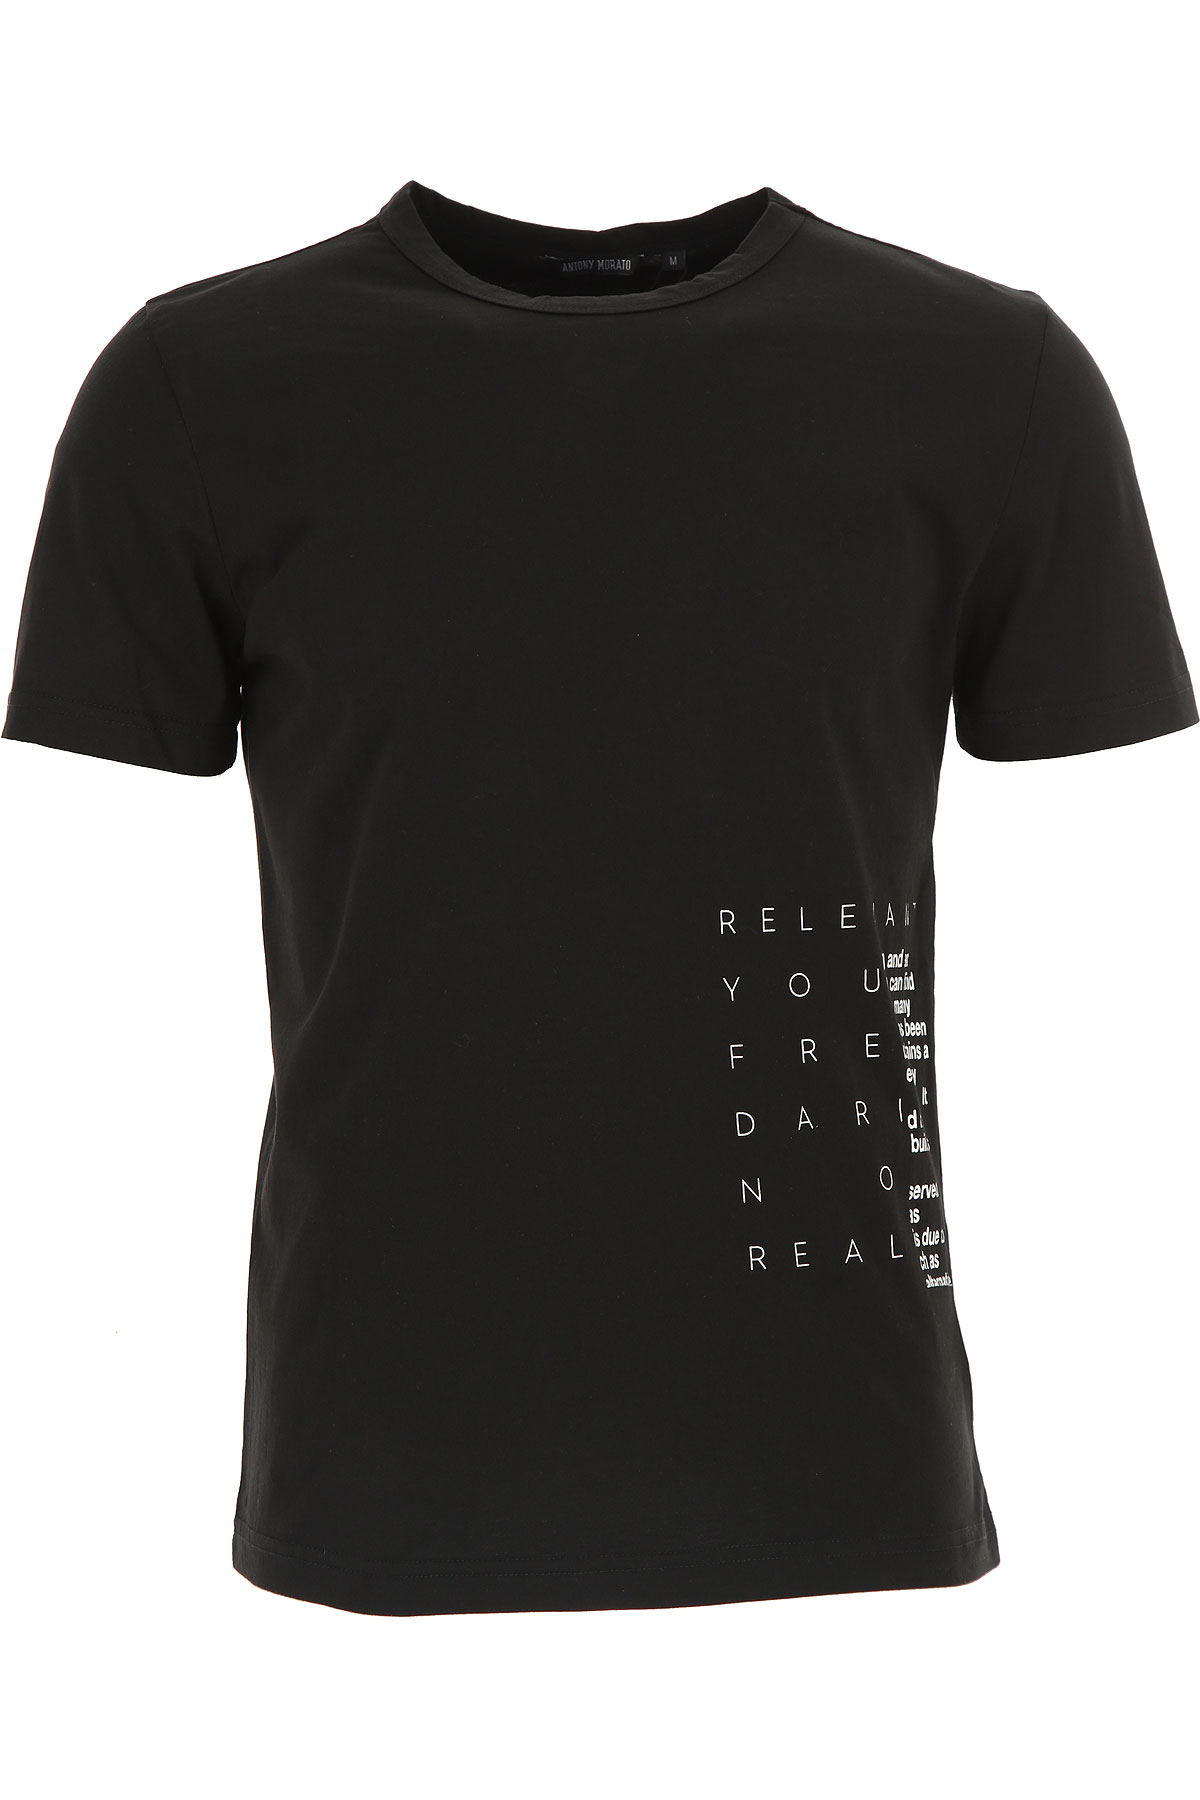 Antony Morato T-shirt Homme, Noir, Coton, 2017, L M S XL XXL